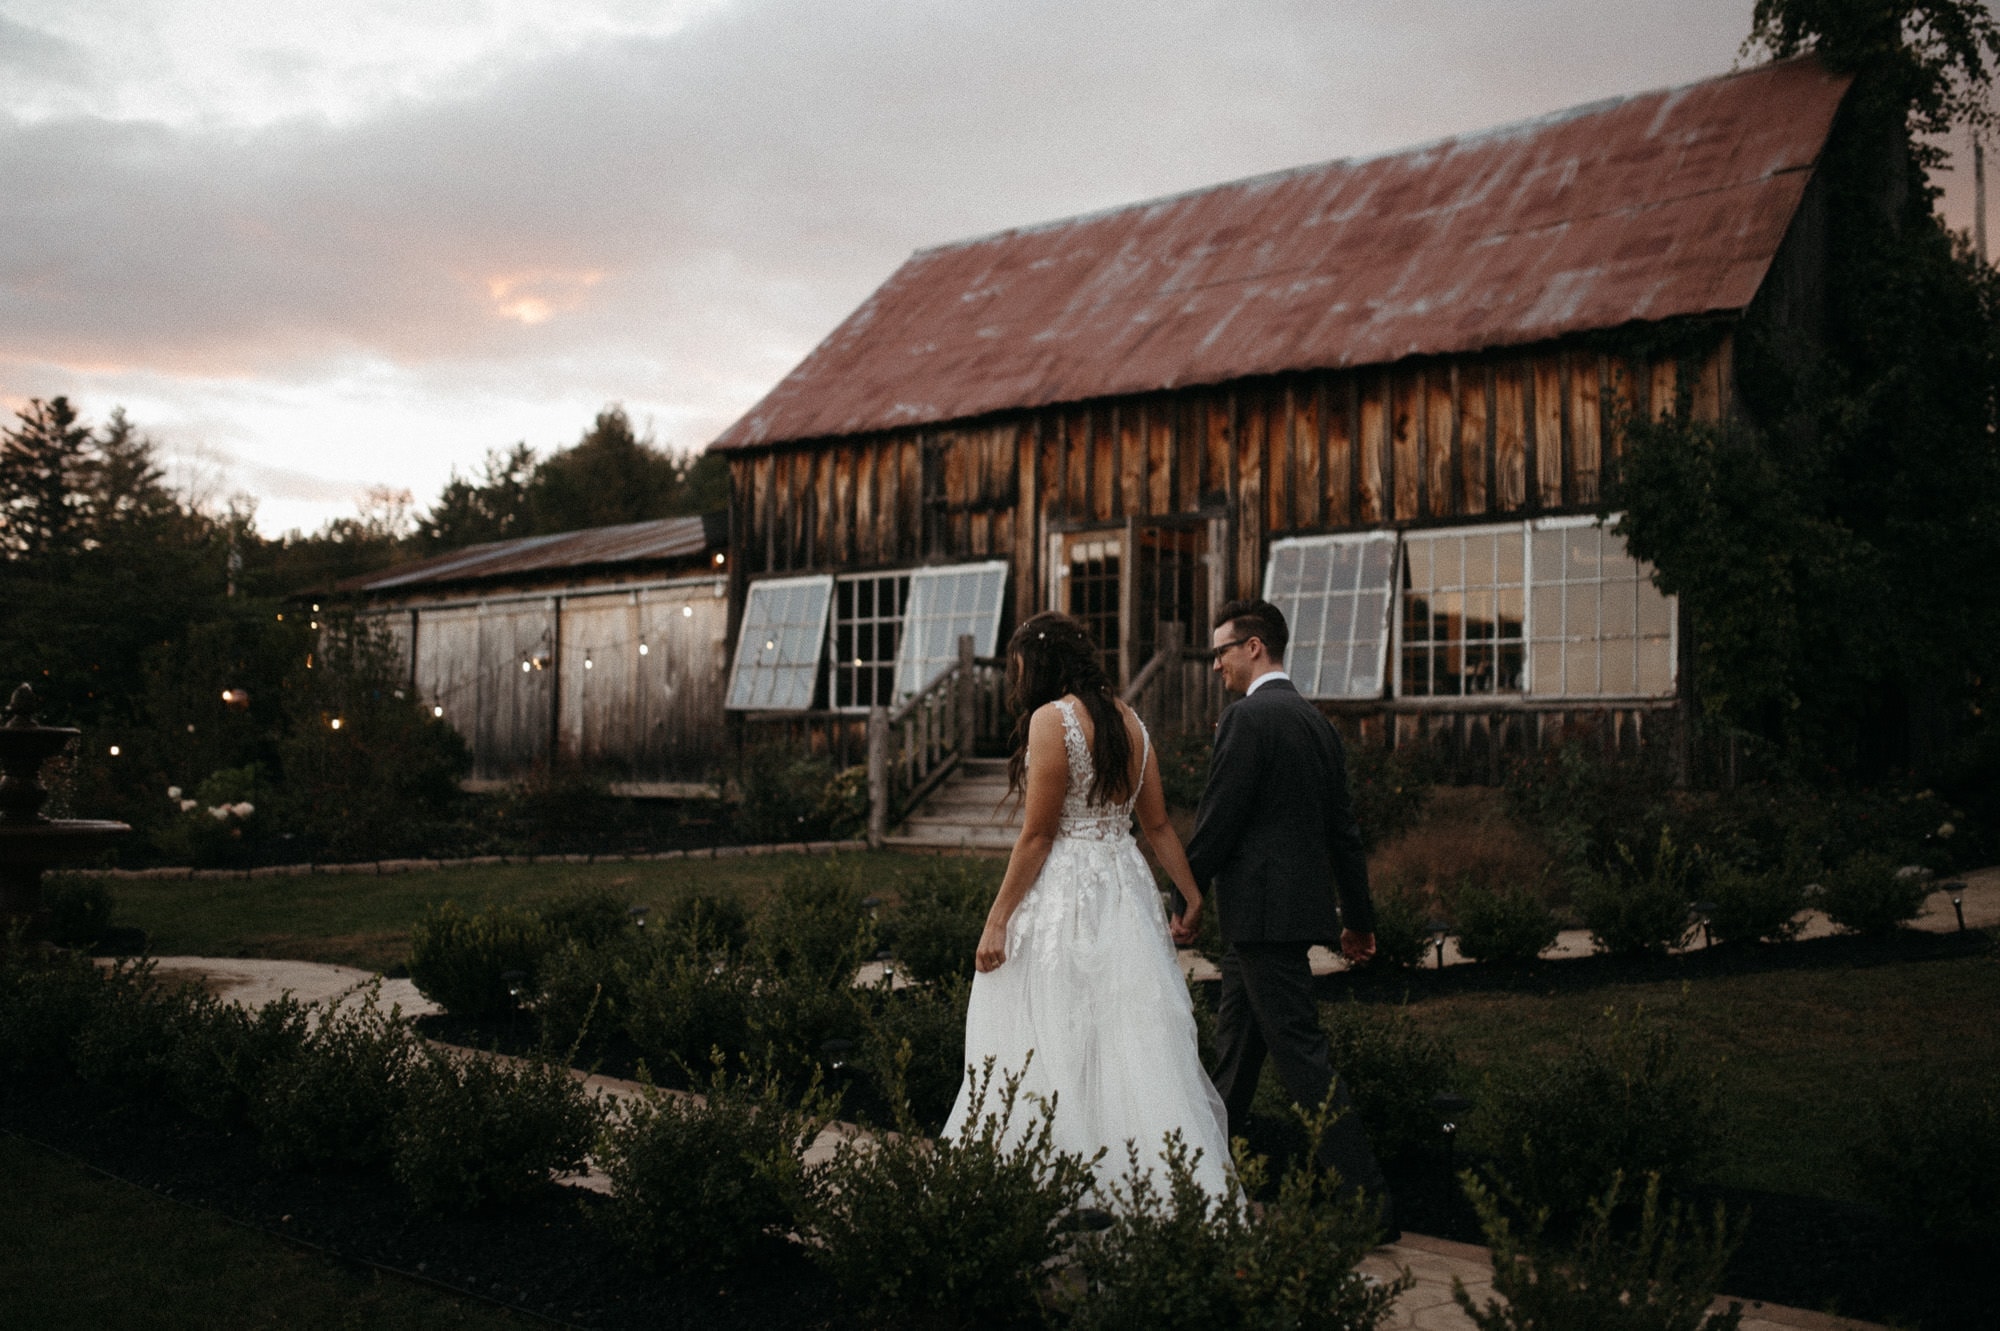 Chelsie & Matt’s Promise Gardens of the Adirondacks Wedding